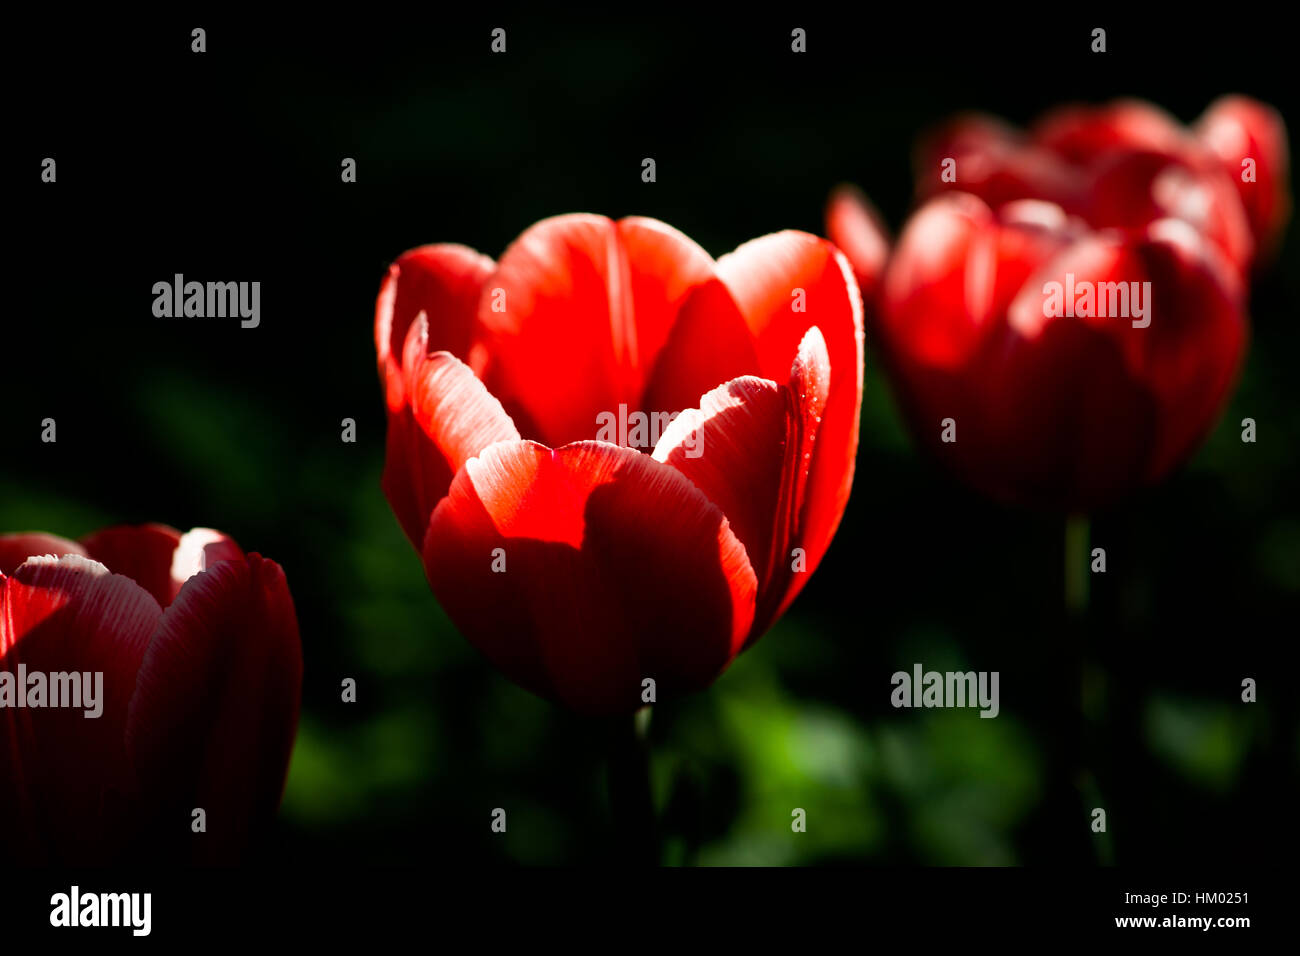 Tre rossi tulip fiori in una fila diagonale. Fiori soleggiati contro verde scuro e sfondo nero. Tasto basso fotografia. Giochi di luce e ombra. Spri Foto Stock